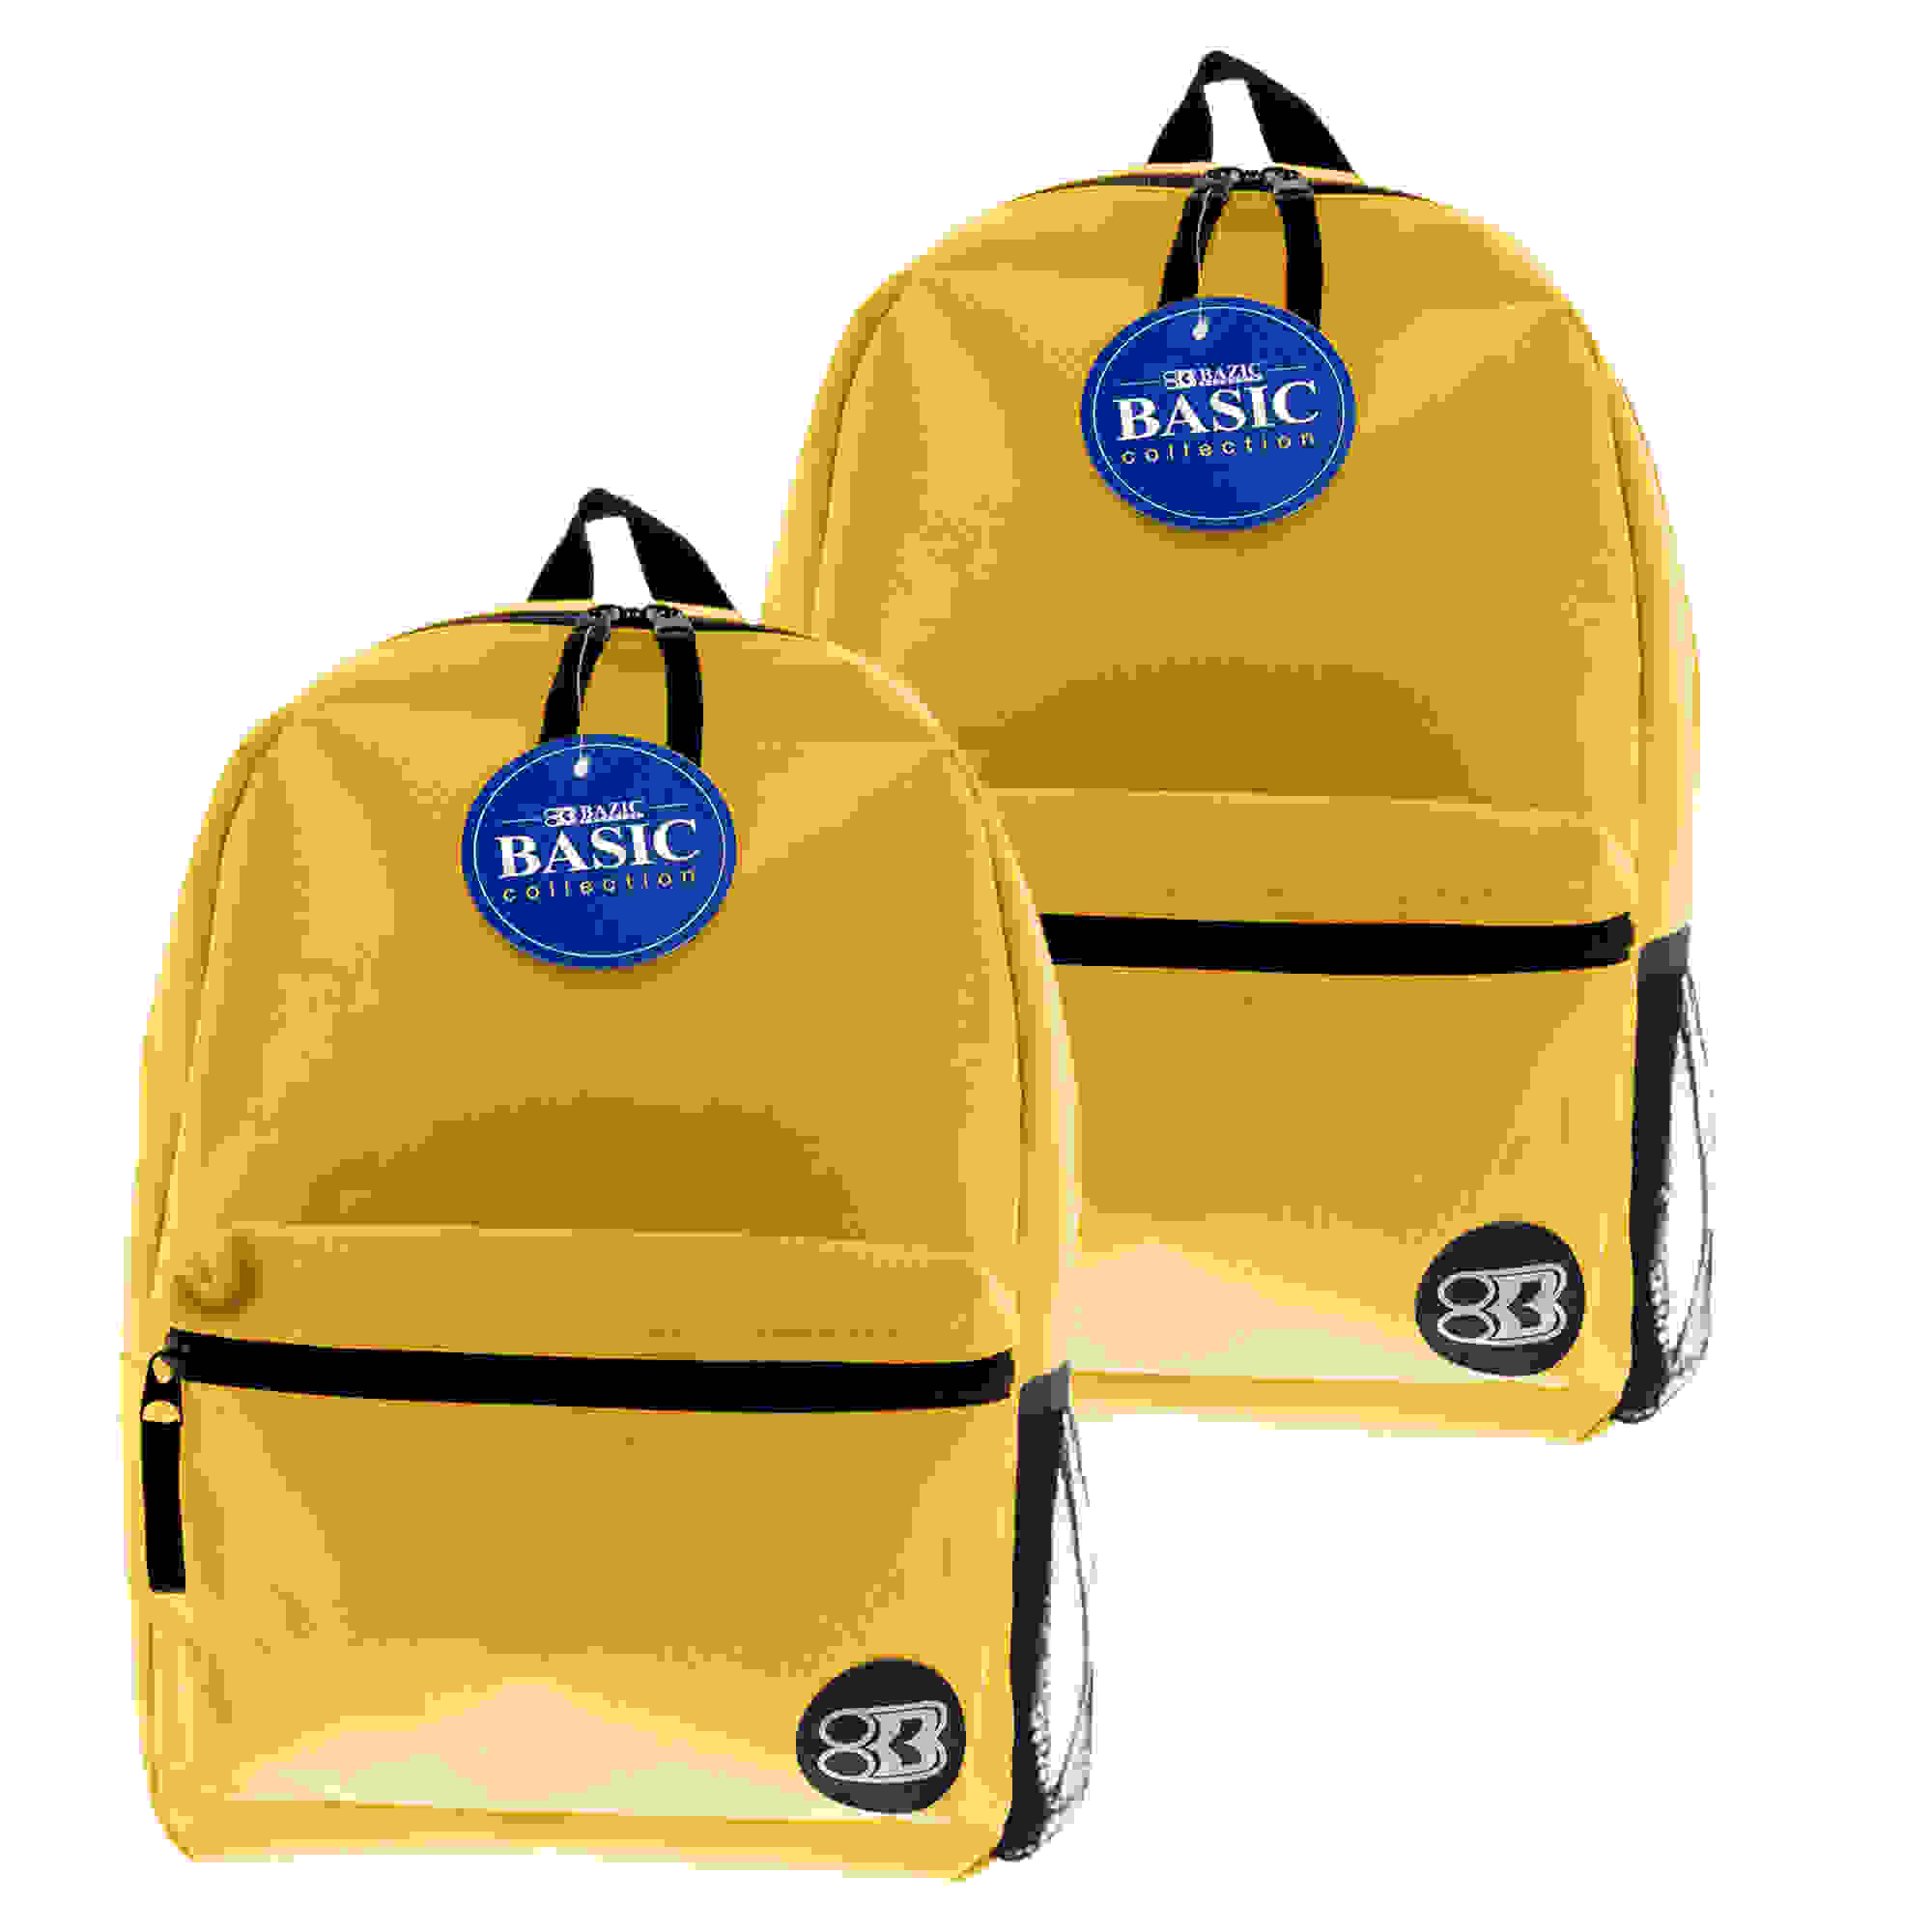 16" Basic Backpack, Mustard, Pack of 2